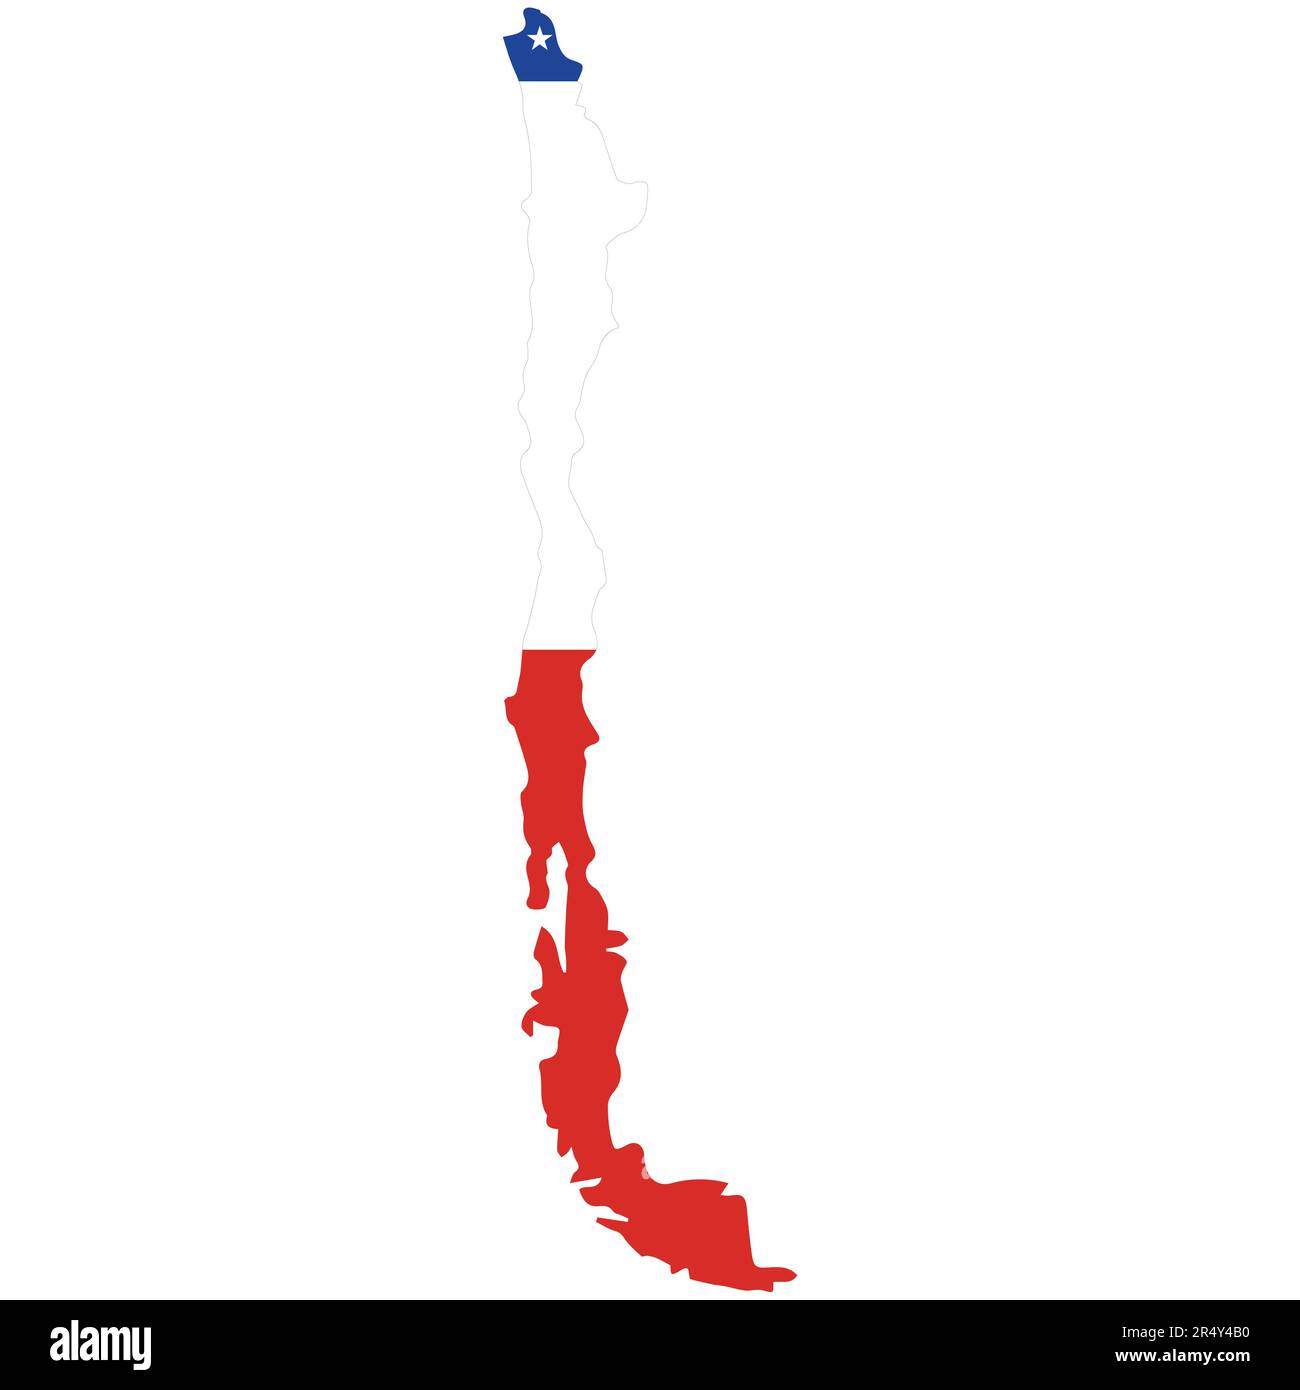 Detaillierte Darstellung des Begriffs „Vektor“ auf Karte und Flagge der Republik Chile. Stock Vektor